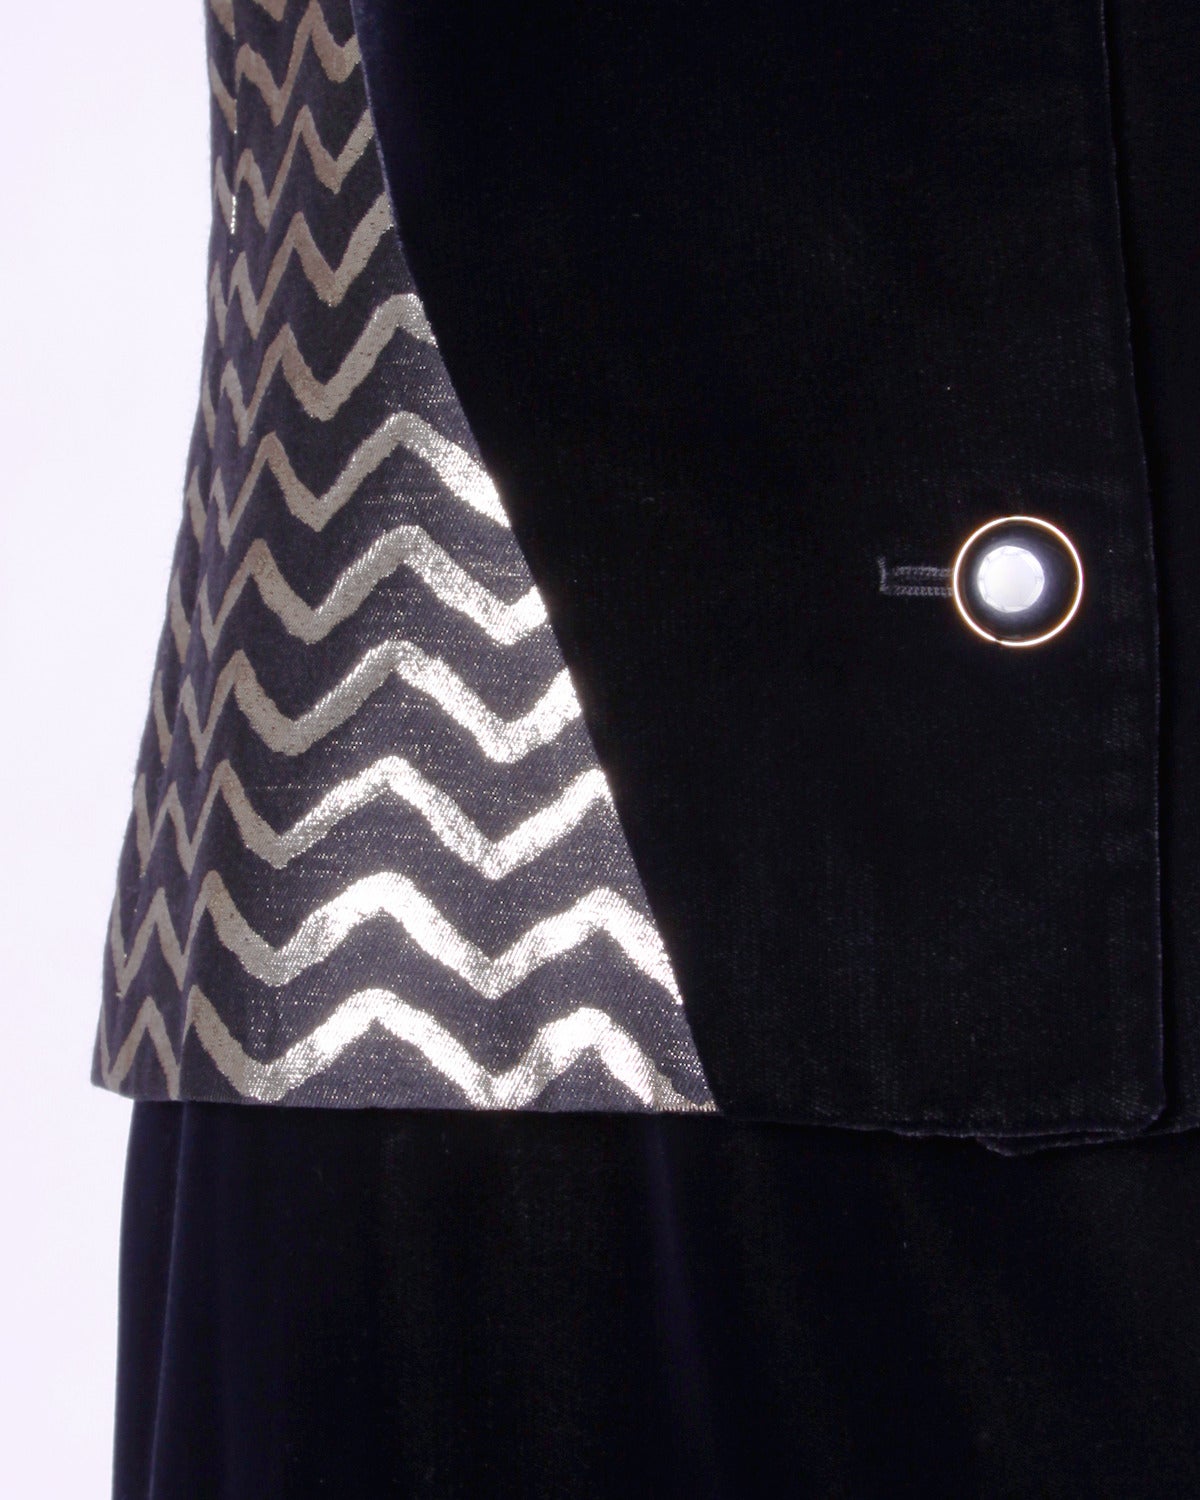 Élégant tailleur vintage de Givenchy en velours de soie noir et tissu à chevrons métalliques or et noirs. Portez la jupe et la veste ensemble ou séparément !

Détails :

Entièrement doublé
Fermeture à boutons sur le dessus/ Fermeture à